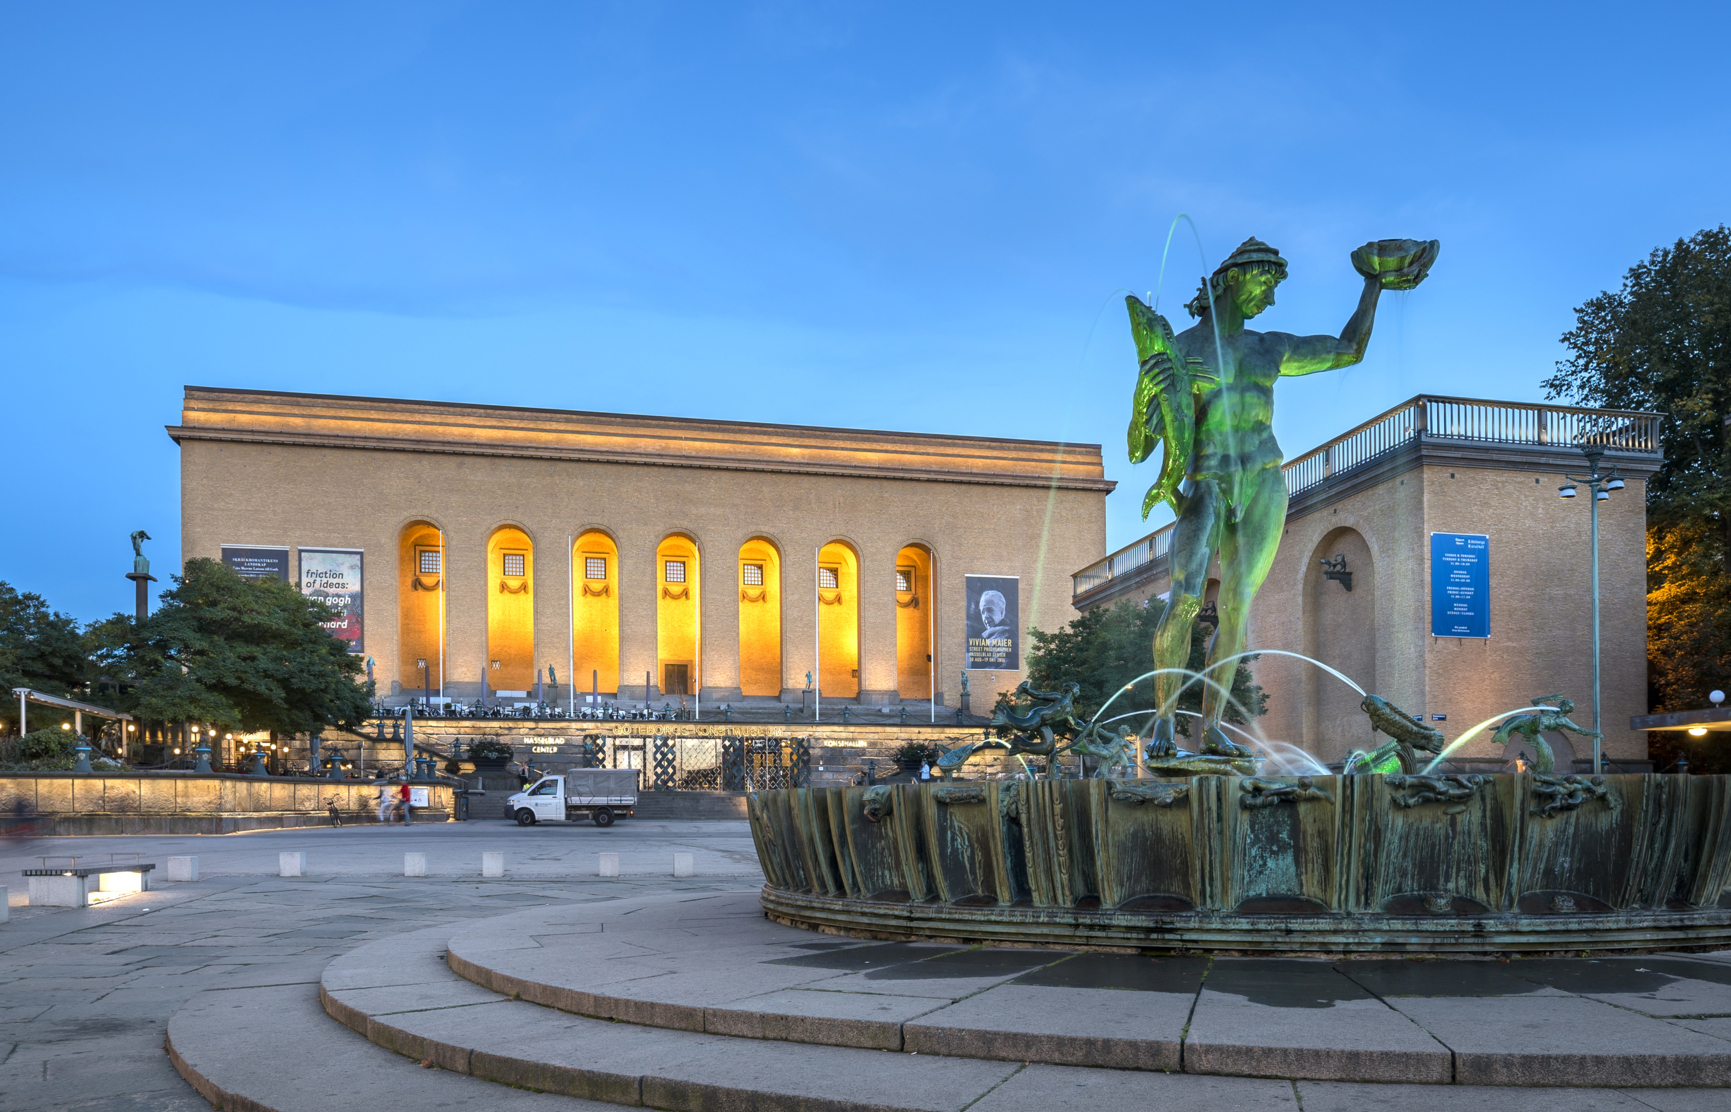 Poseidon-statyn och Göteborgs konstmuseum lyser upp vid Götaplatsen.